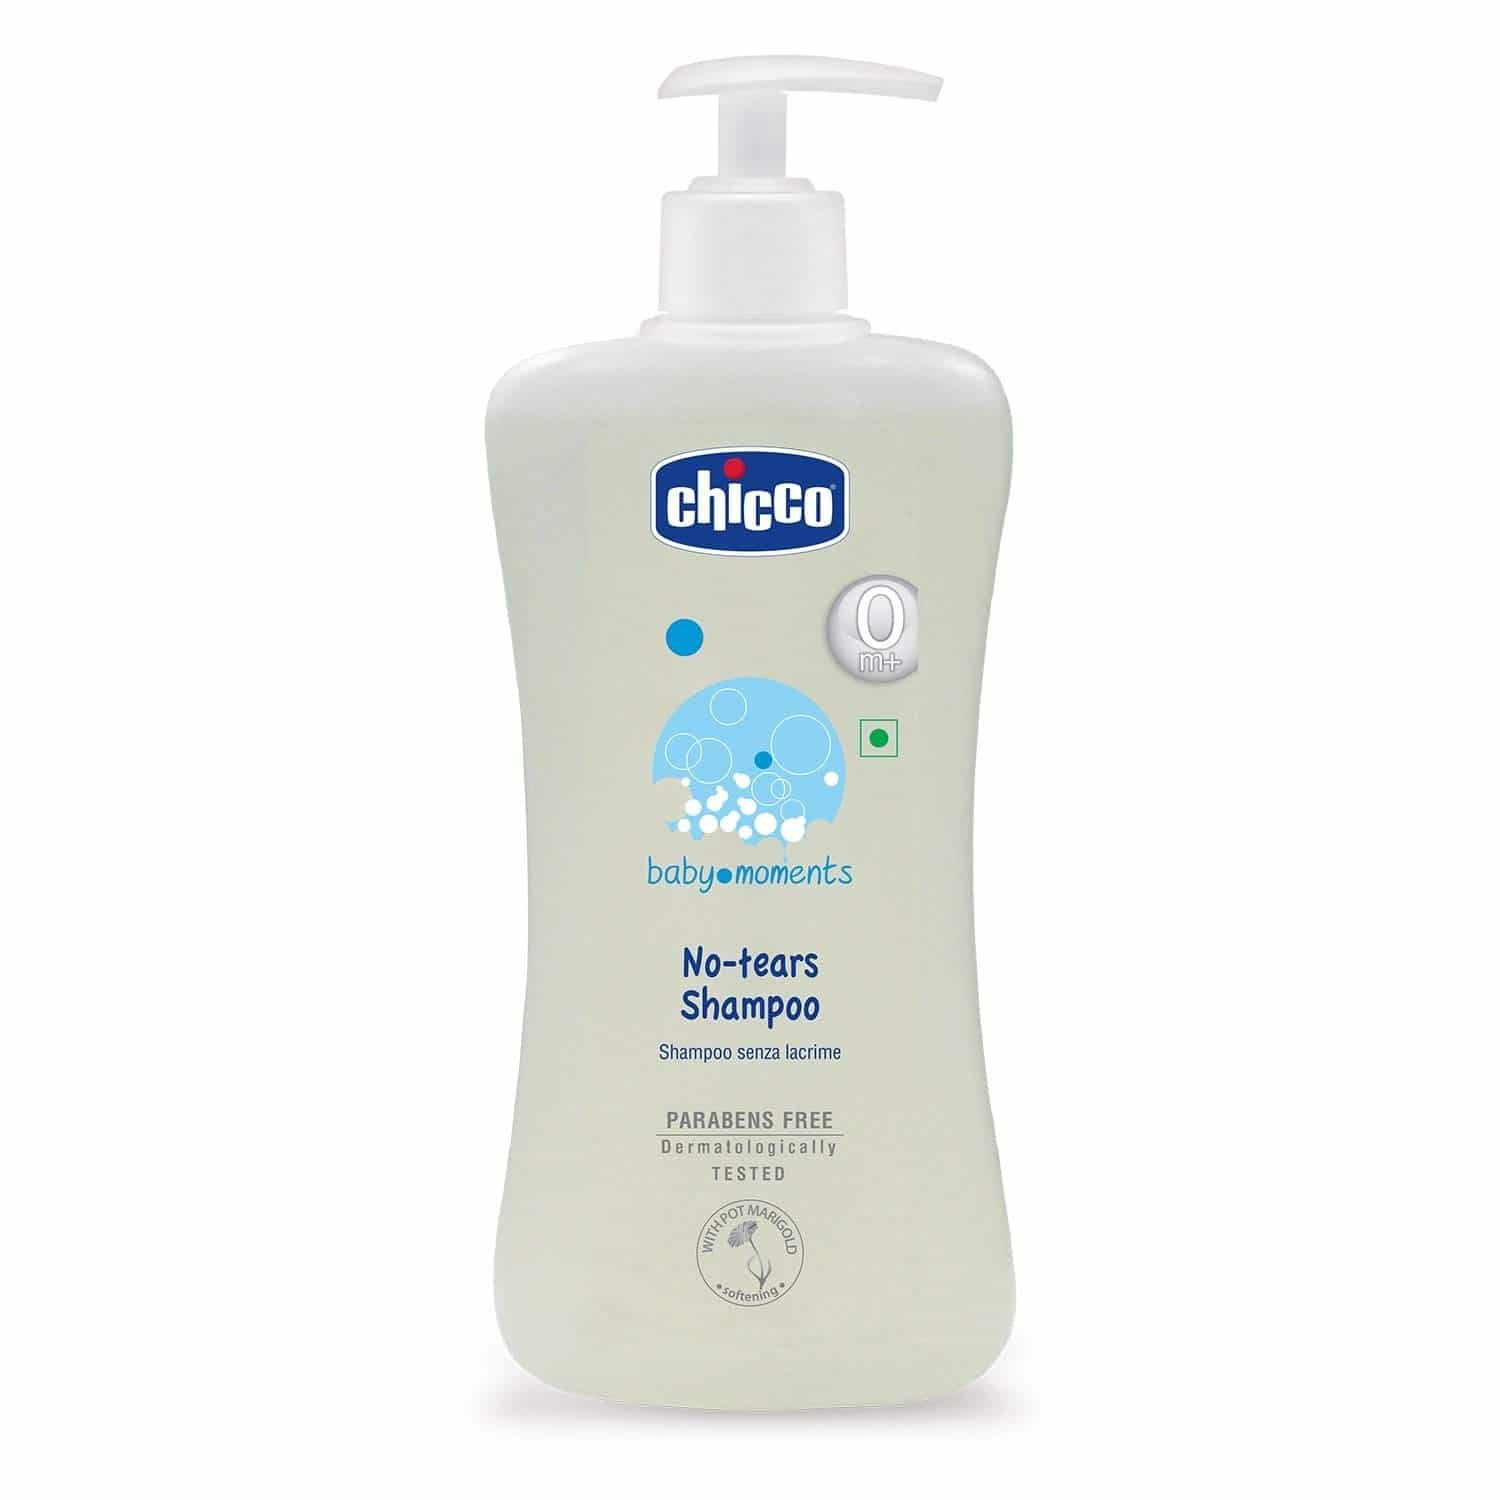  Chicco No-tears Shampoo: